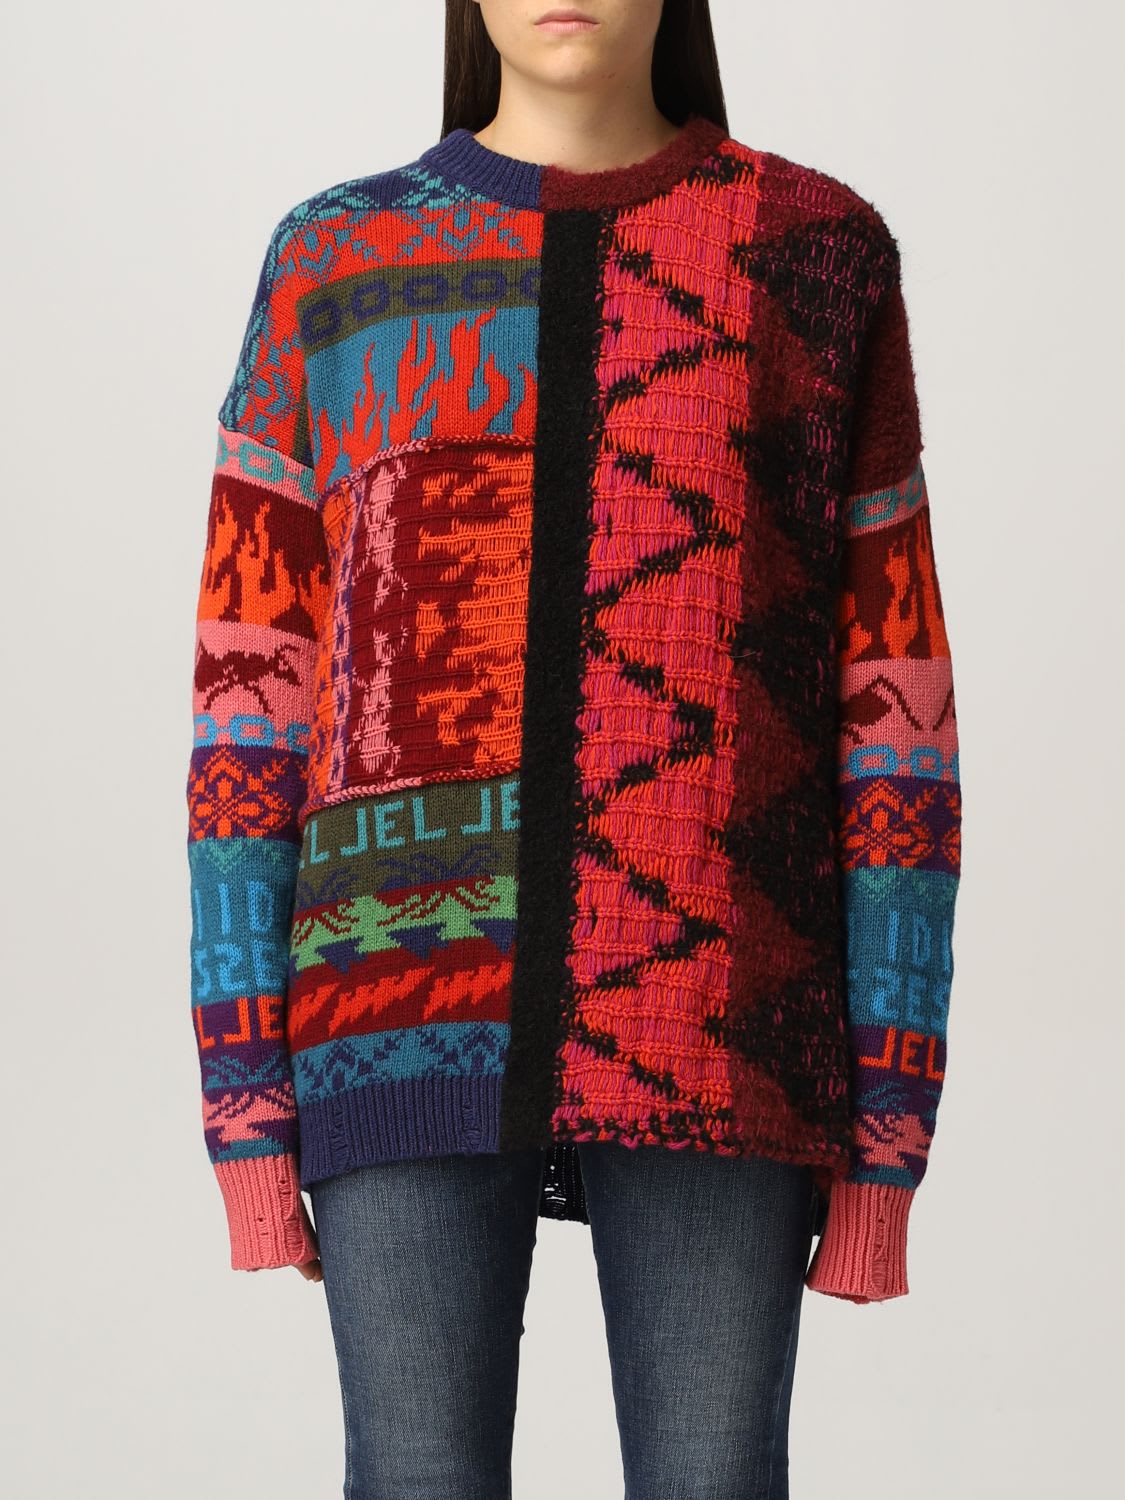 Diesel Sweater Diesel Pullover In Wool And Alpaca Jacquard Blend